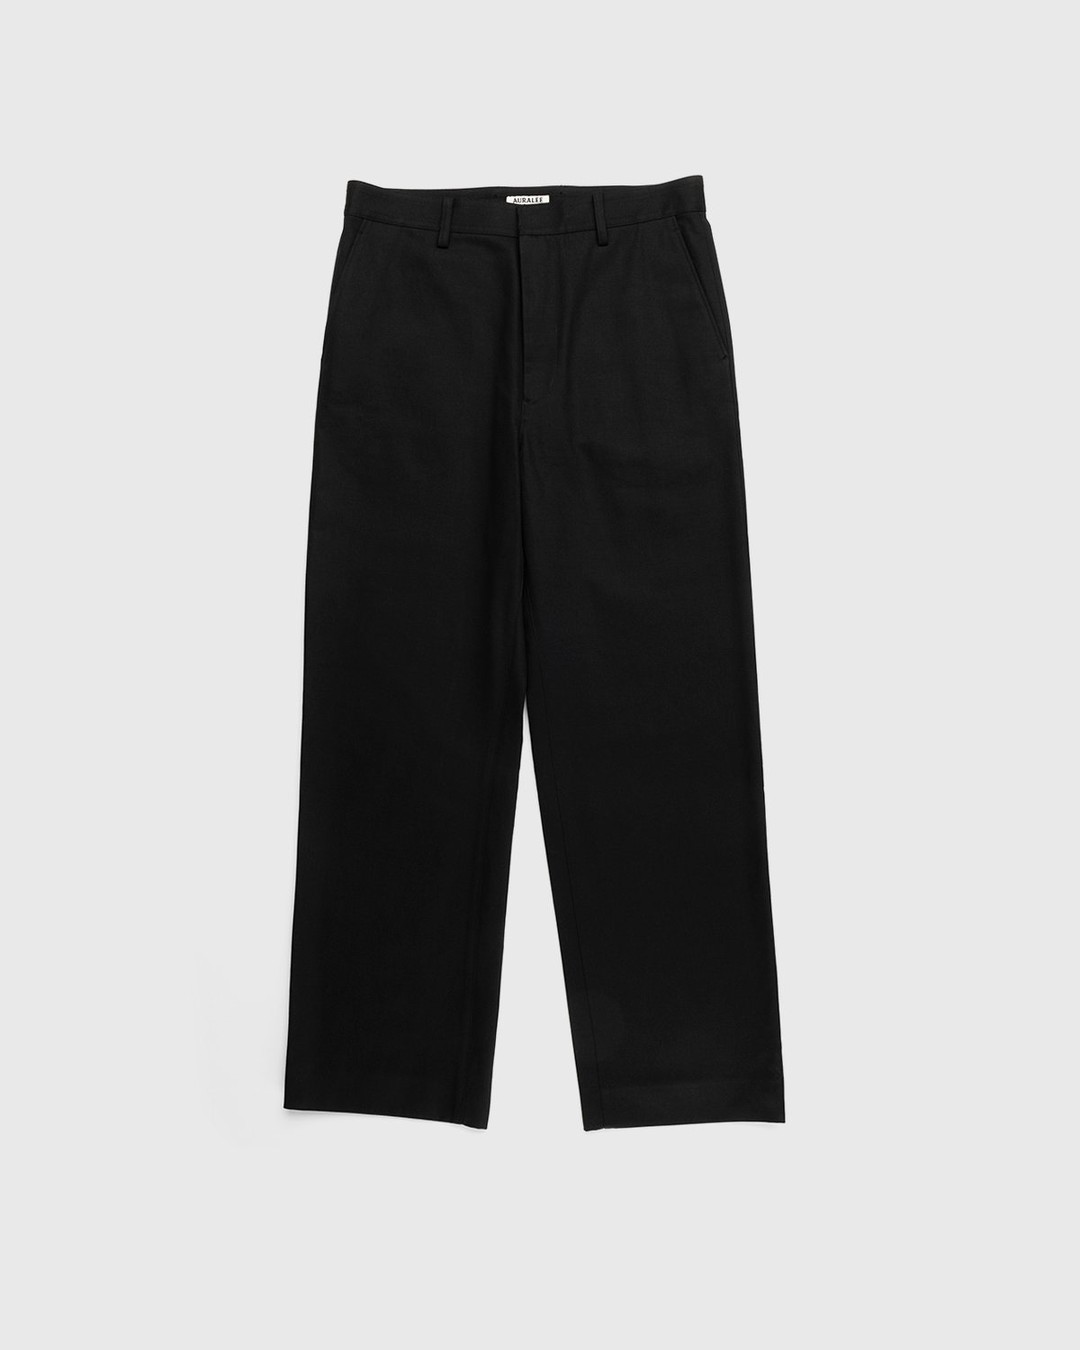 Auralee – Cotton Woven Pants Black - Pants - Black - Image 1